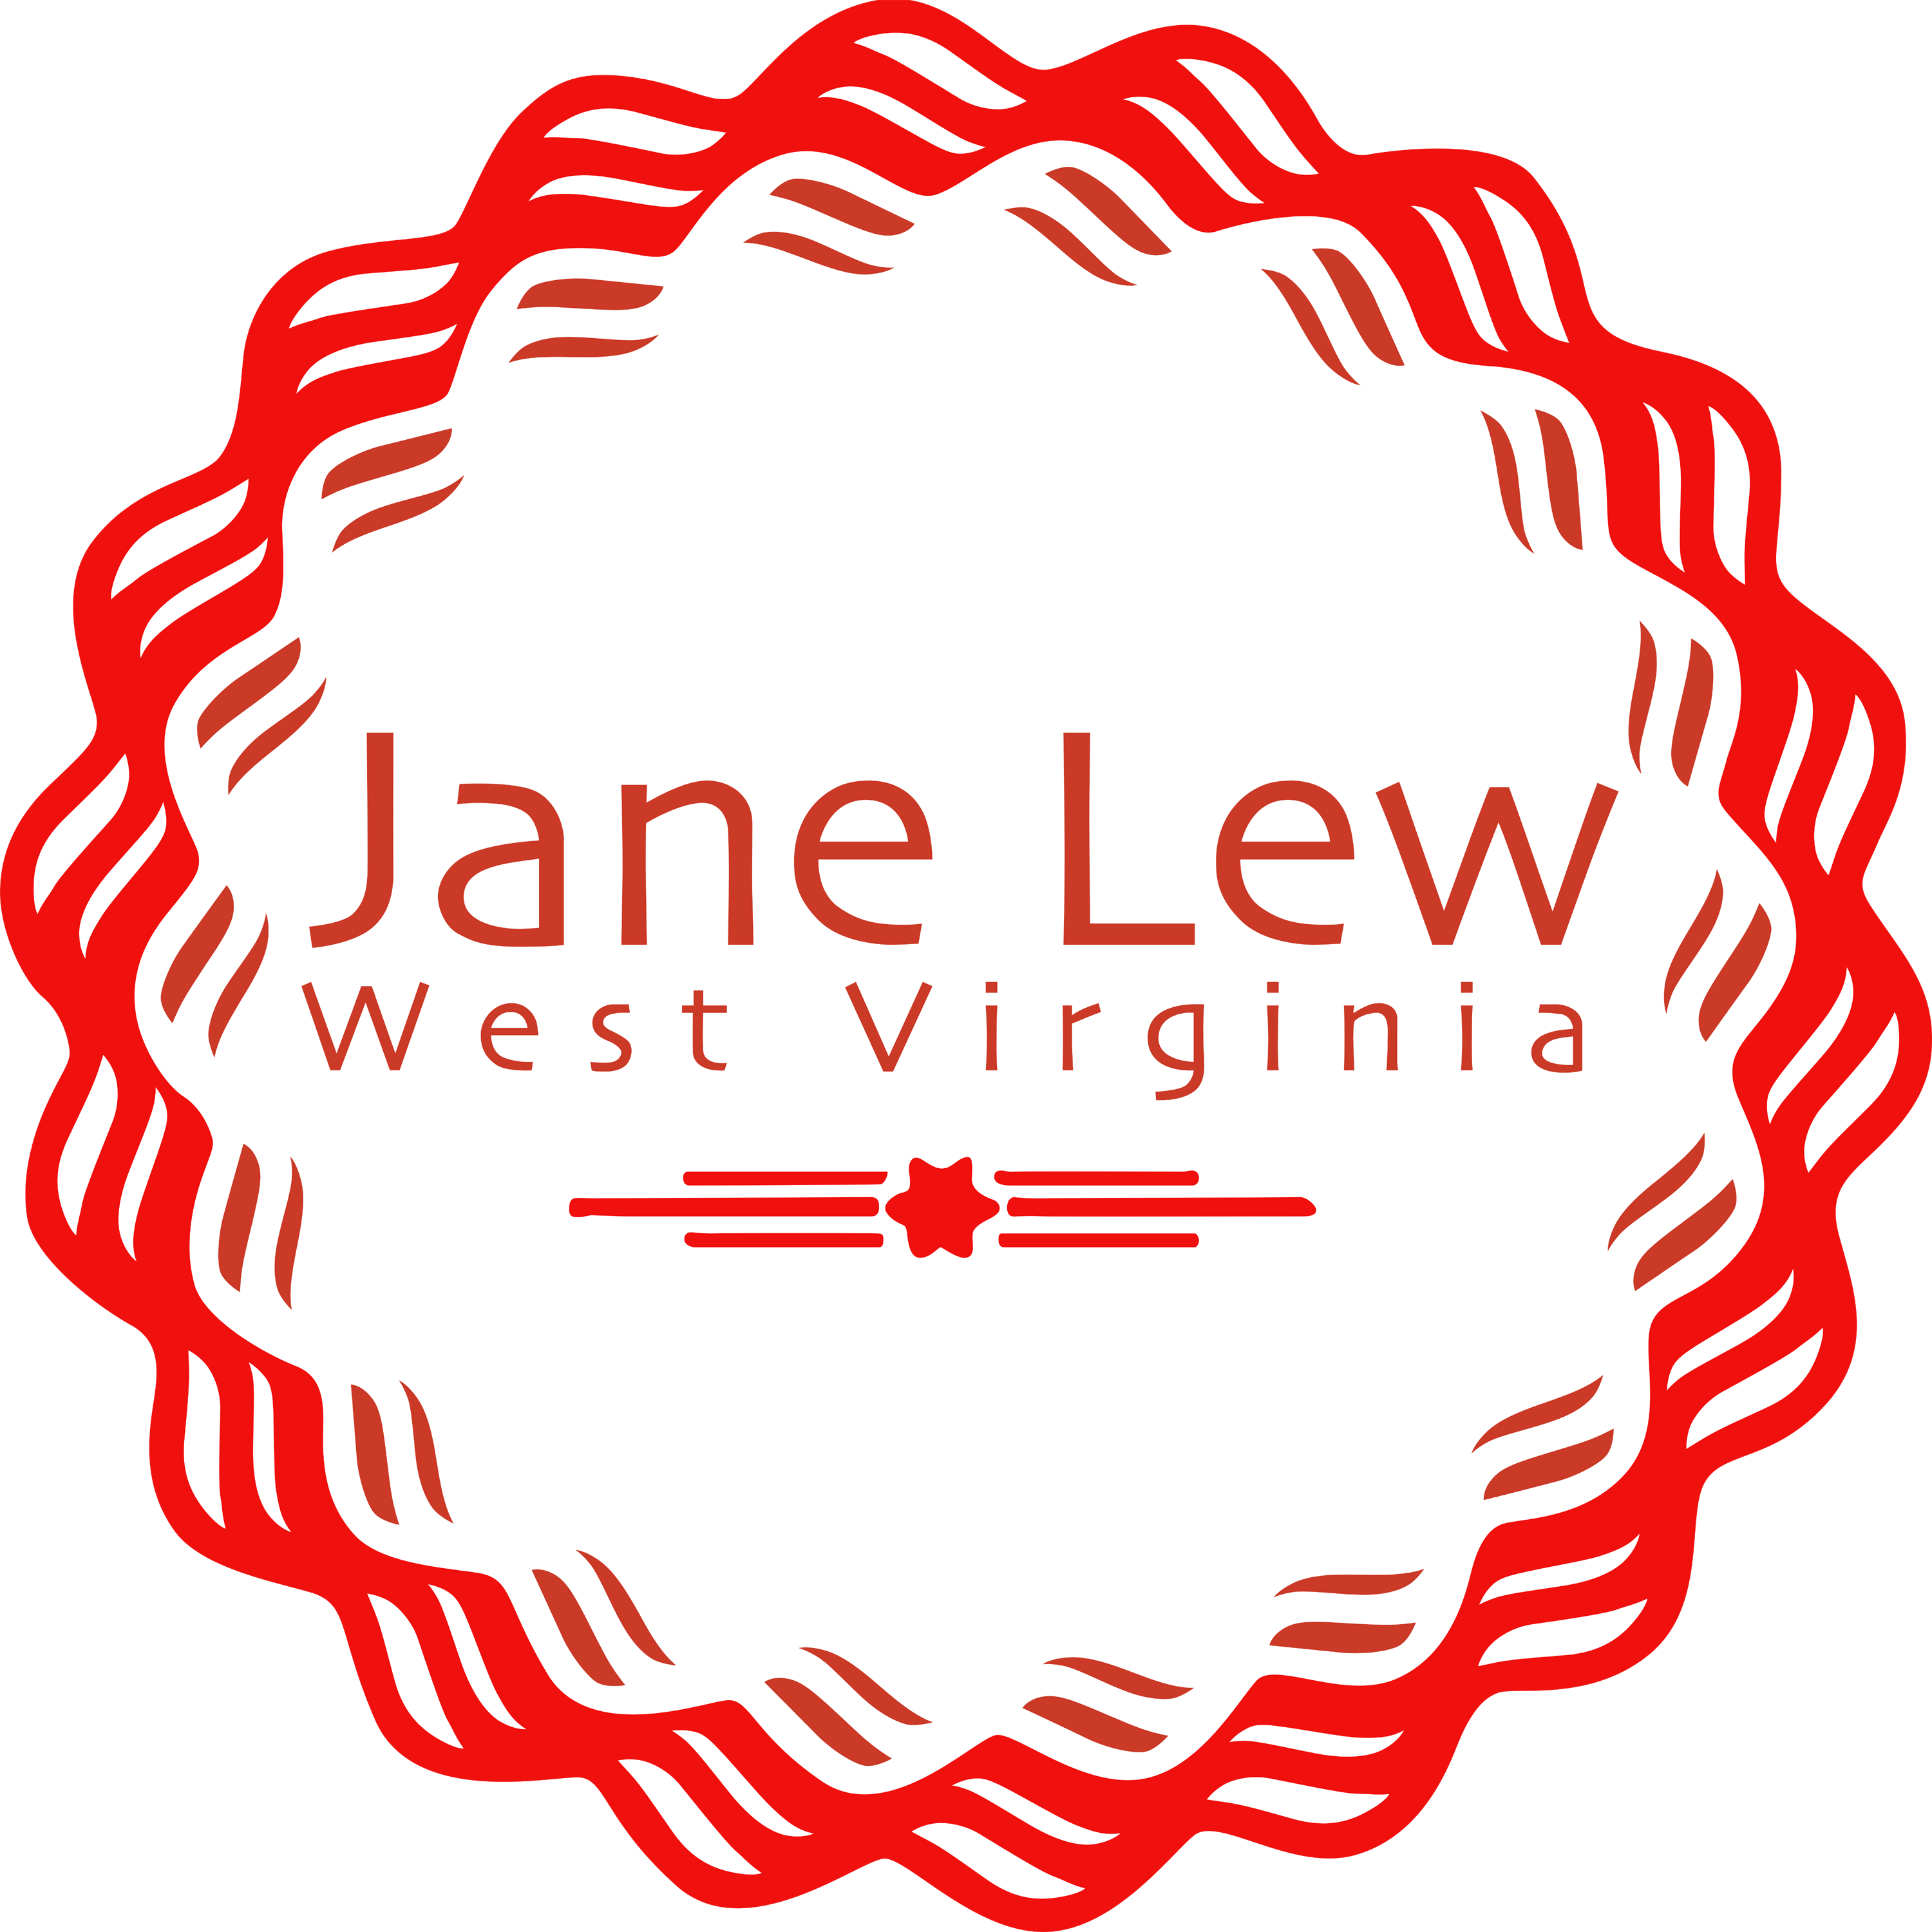 Jane Lew West Virginia Logo Transparent Image